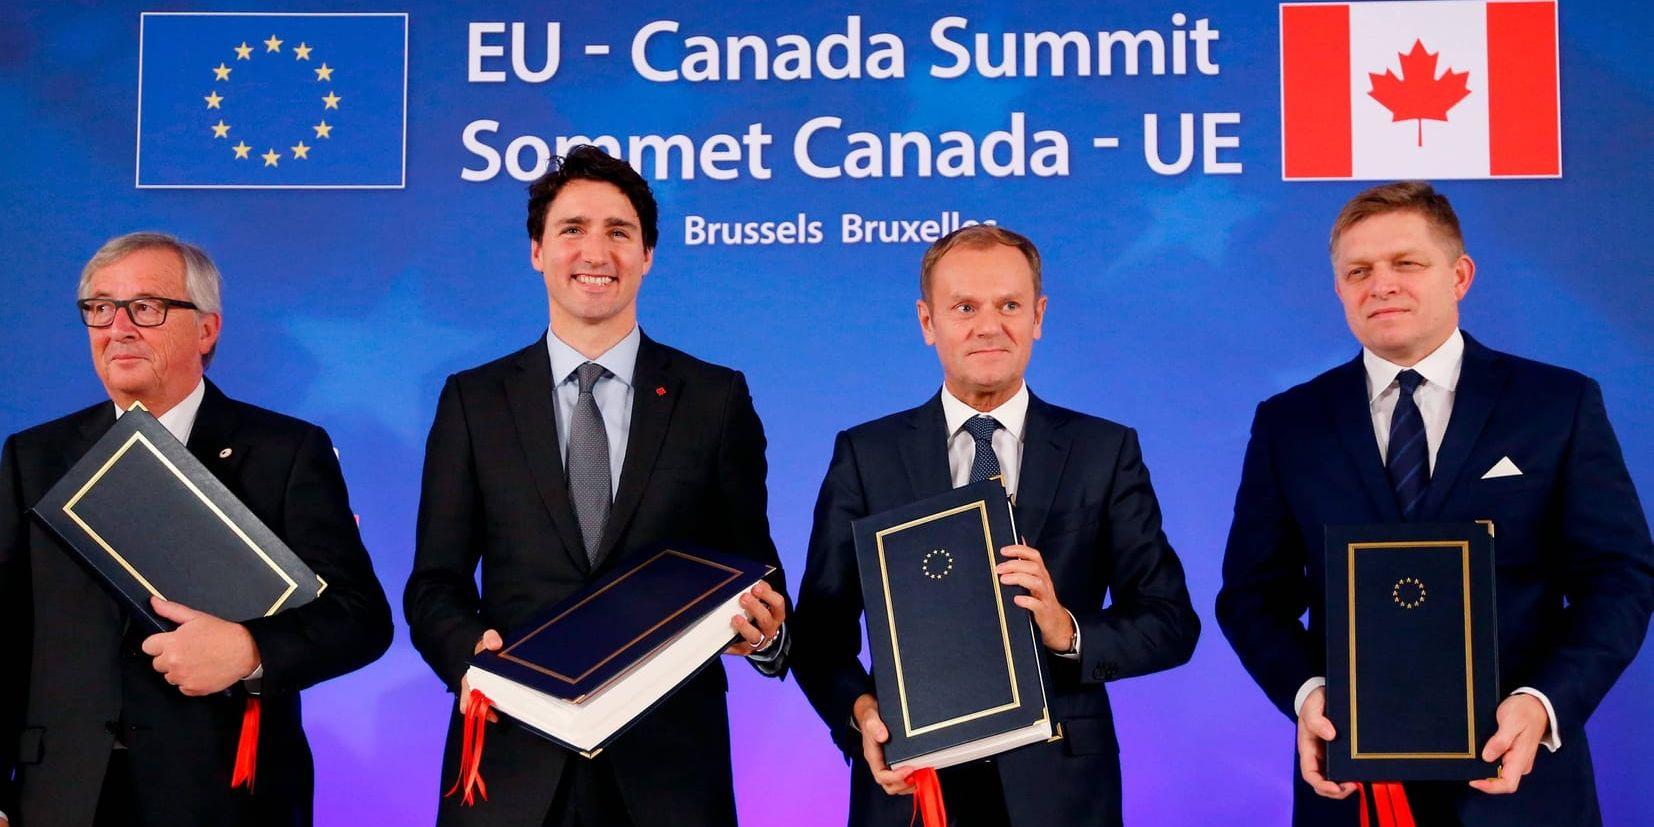 Idel glada miner när företrädare för Kanada och EU kom överens om Ceta-avtalet, men nu ska avtalet tröskas i EU-parlamentet och där möter det motstånd. Arkivbild.